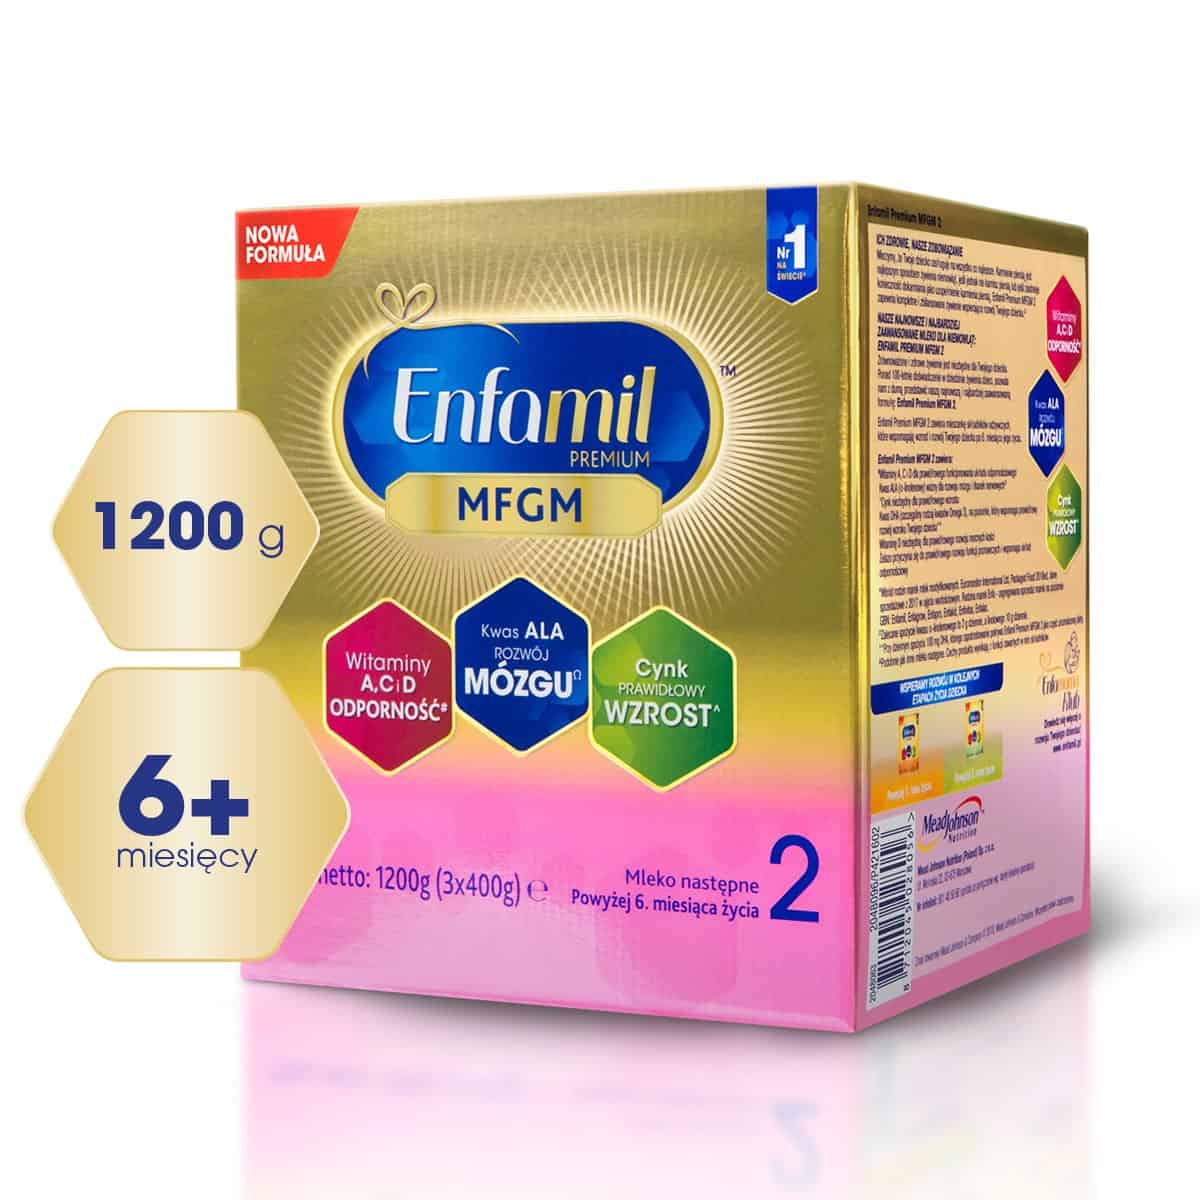 ENFAMIL 2 Premium MFGM Modified Milk 